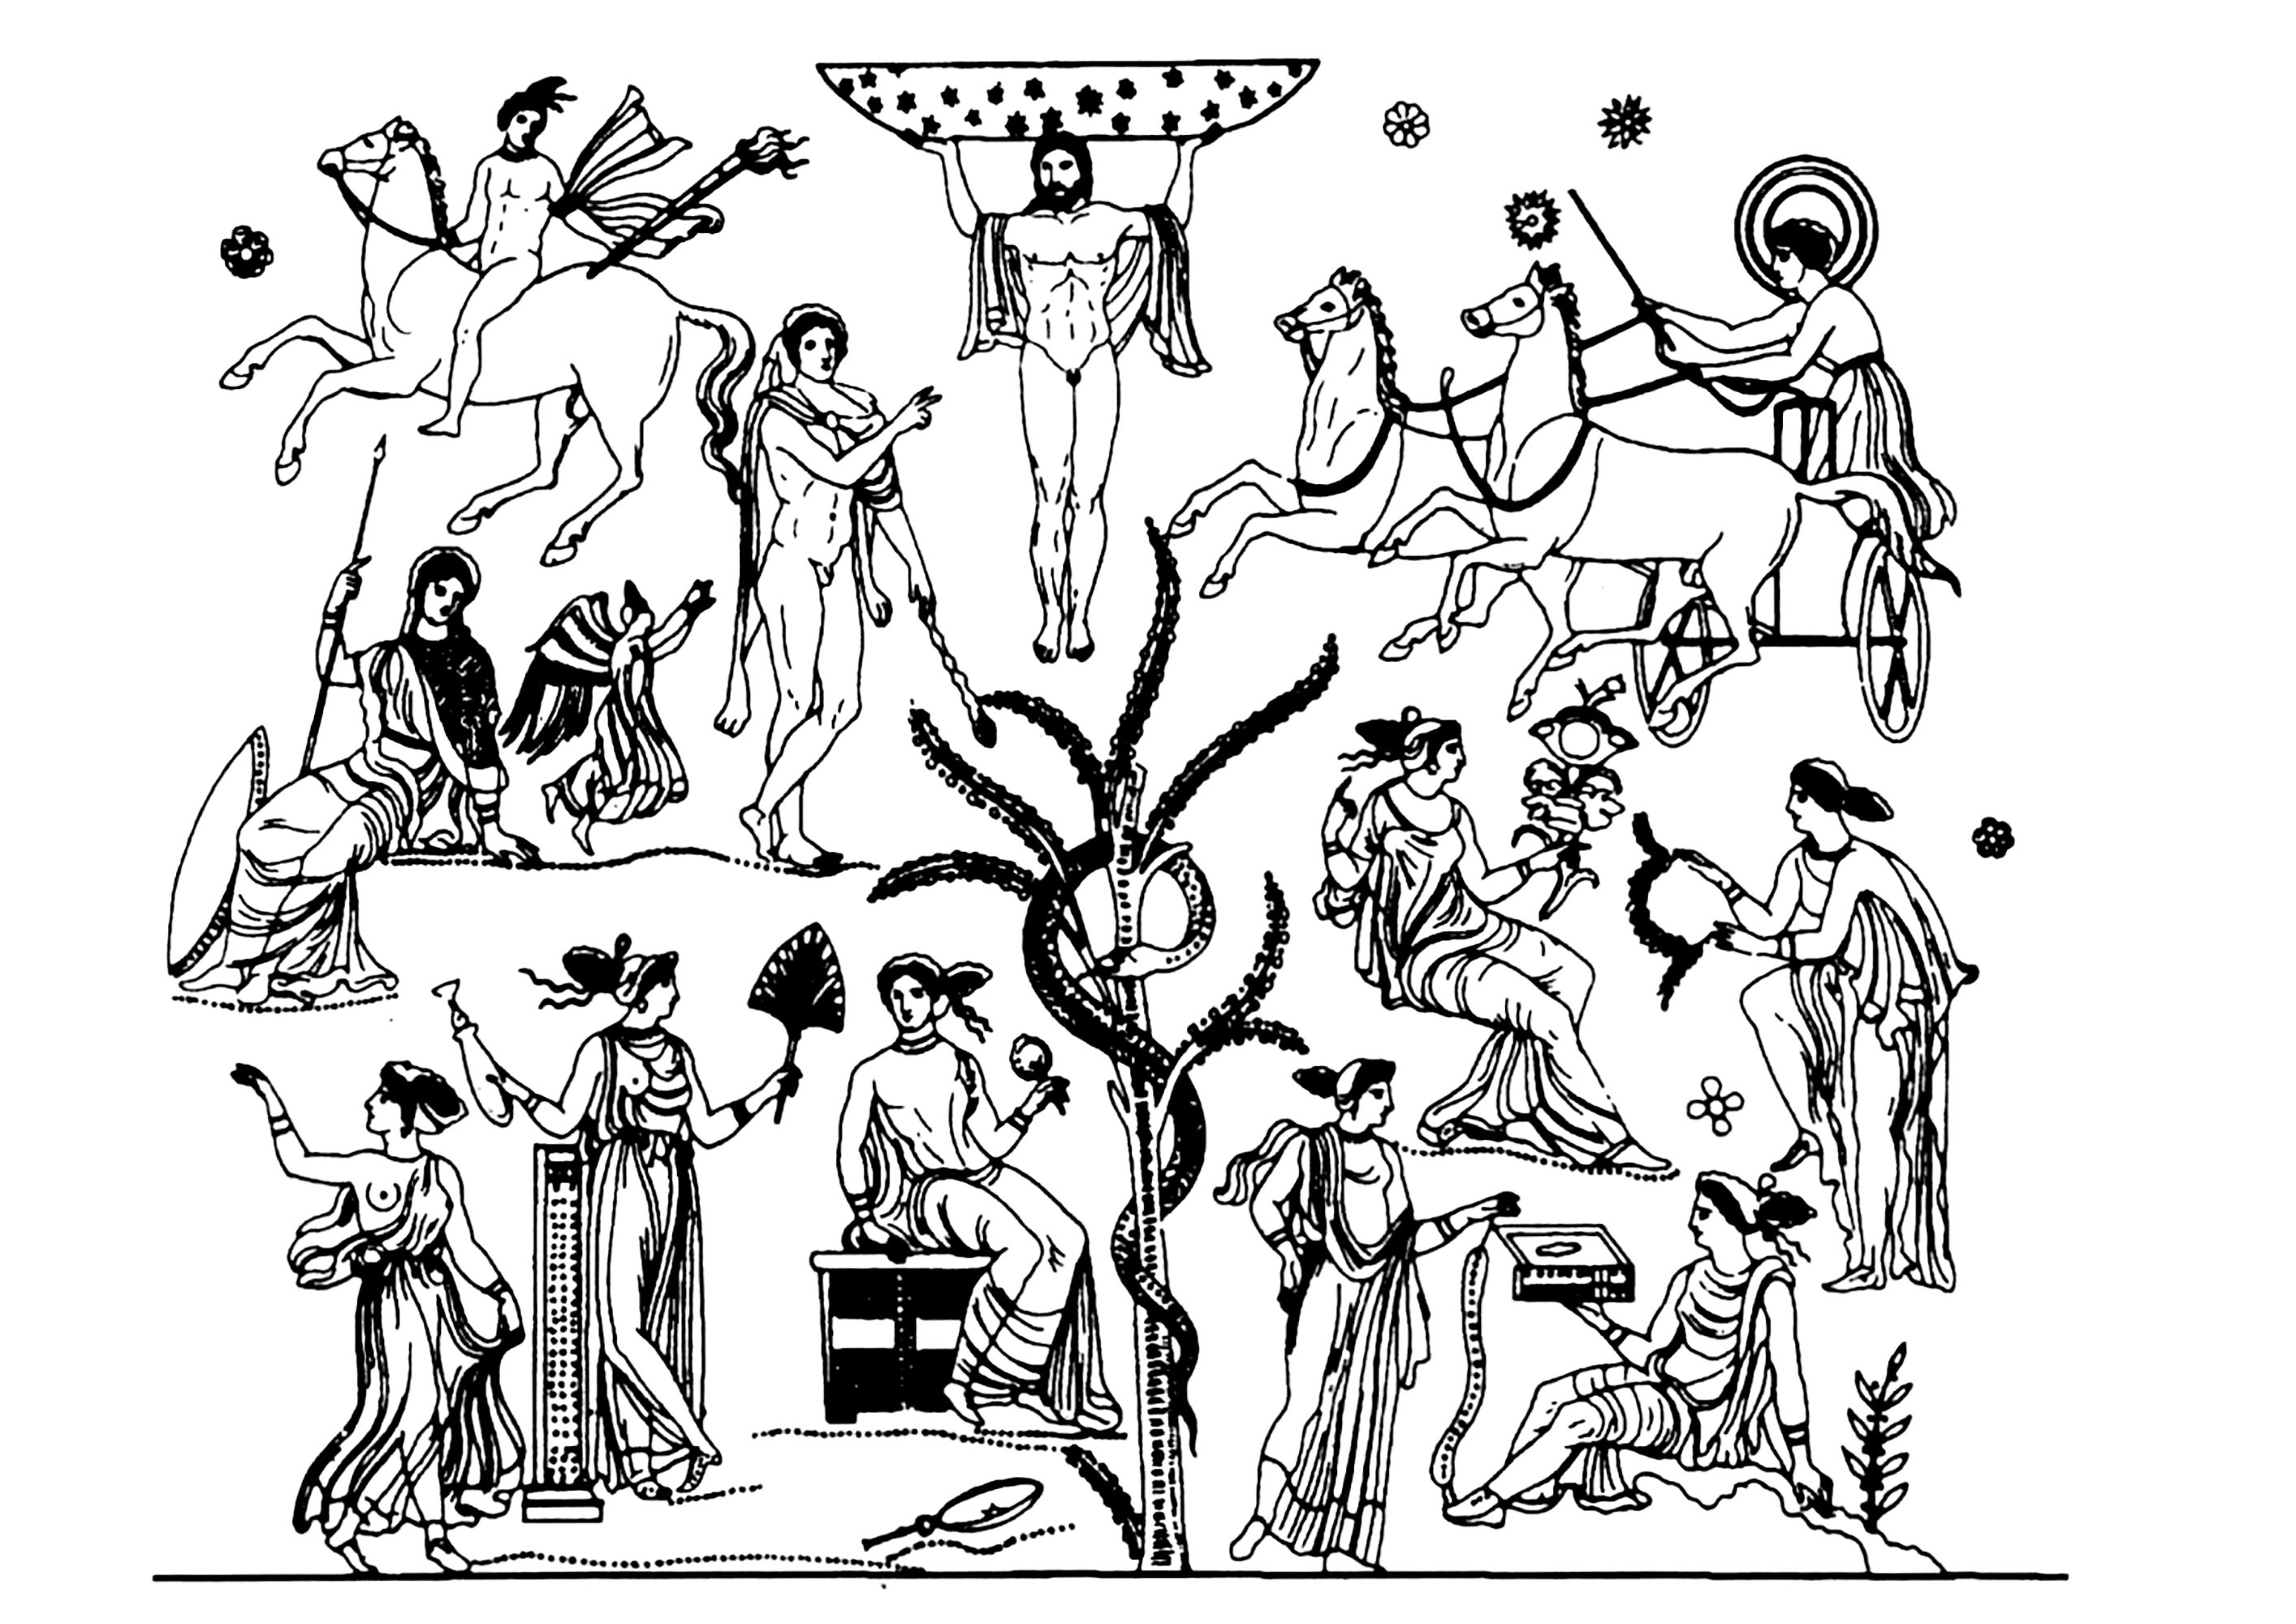 Eroi ed eroine della mitologia greca. Rappresentazione assiale di Atlante e dell'albero del Giardino delle Esperidi, vaso datato tra il 340 e il 320 a.C.Rappresenta Atlante, Hélois, Phosphoros, Nikè, Athéna, Phérécyde, Héraclès...